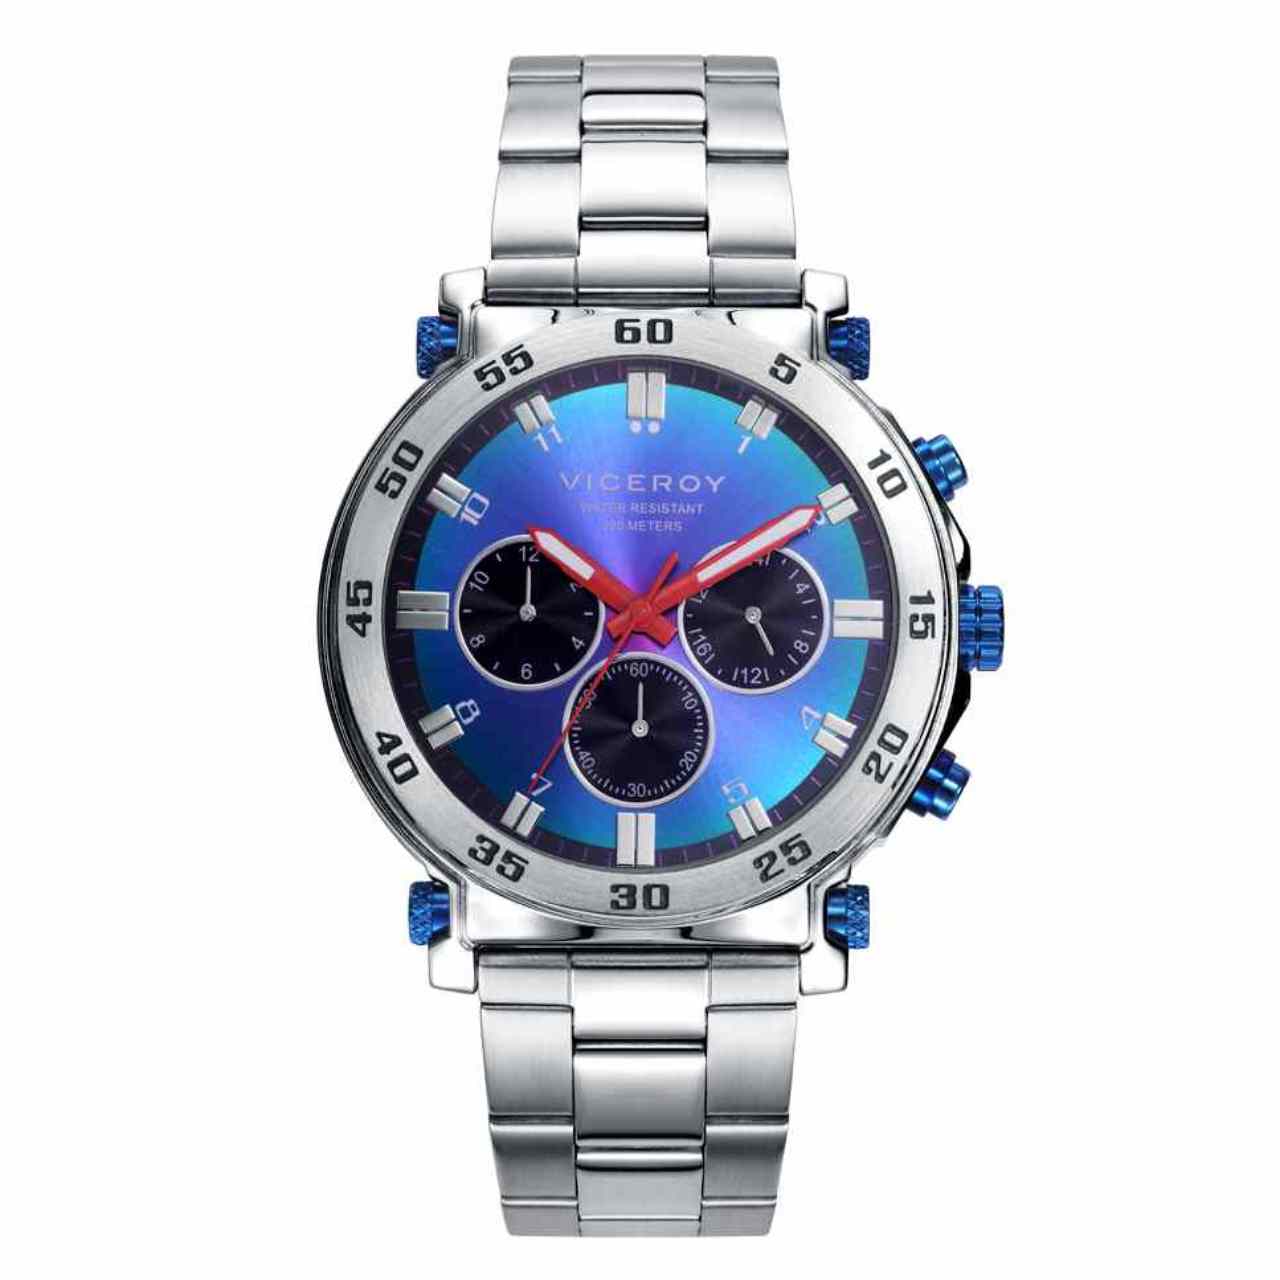 Reloj Hombre Acero Viceroy Analógico - Digital Esfera Azul